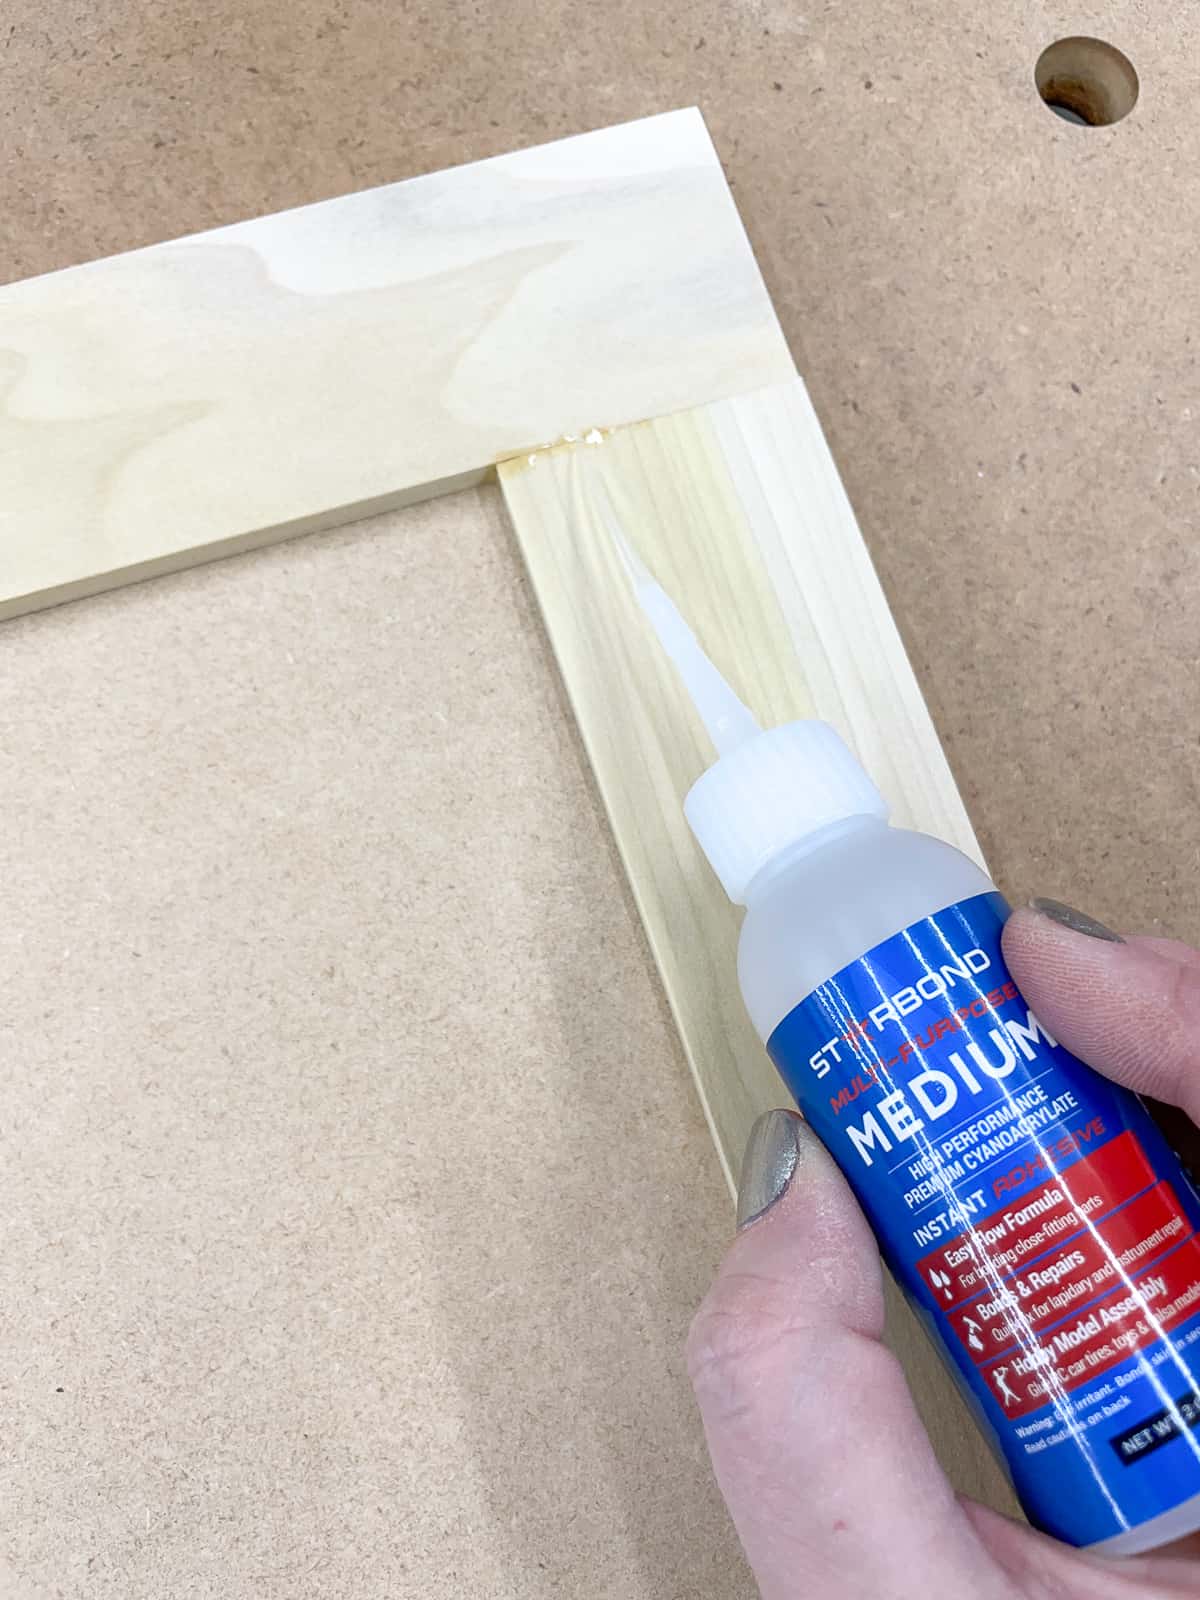 applying CA glue to joint in DIY cabinet door